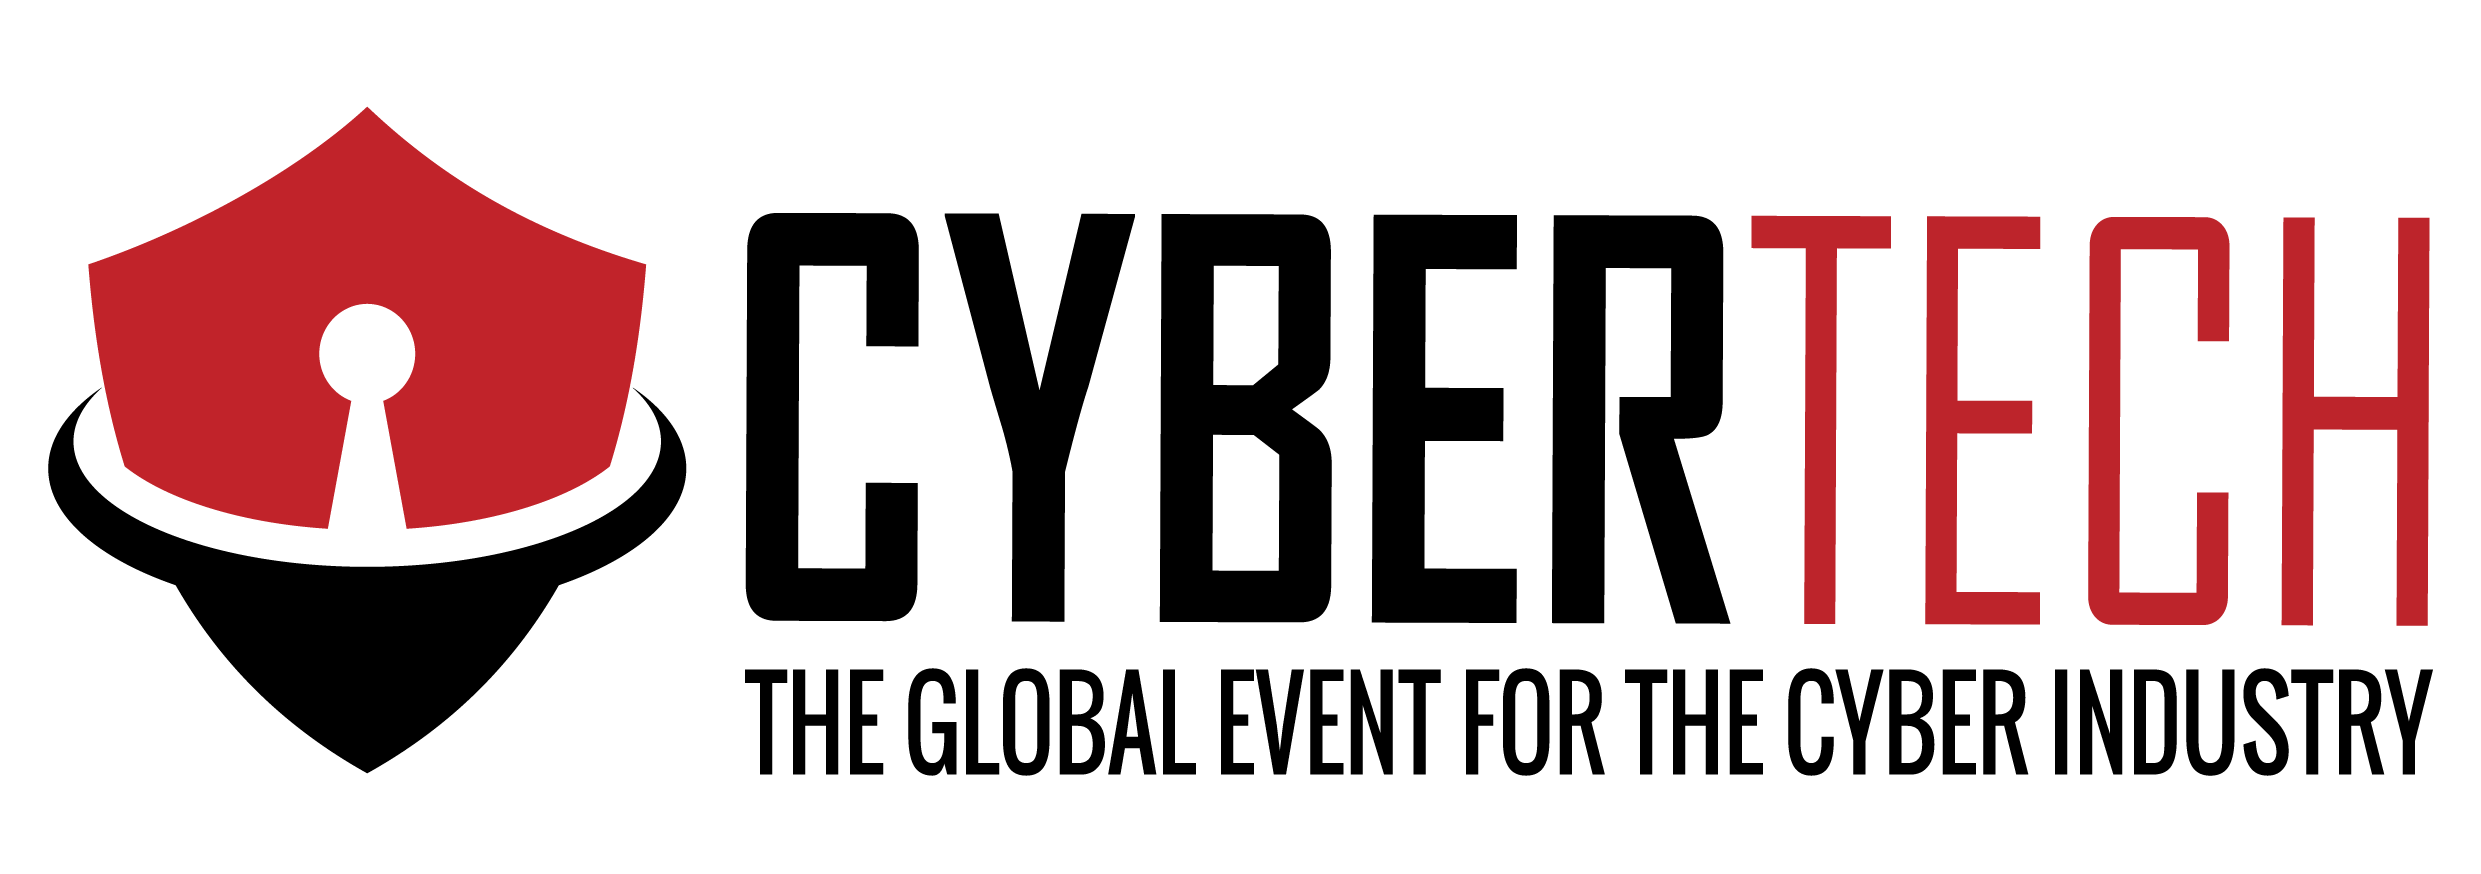 Logo of Cybertech 